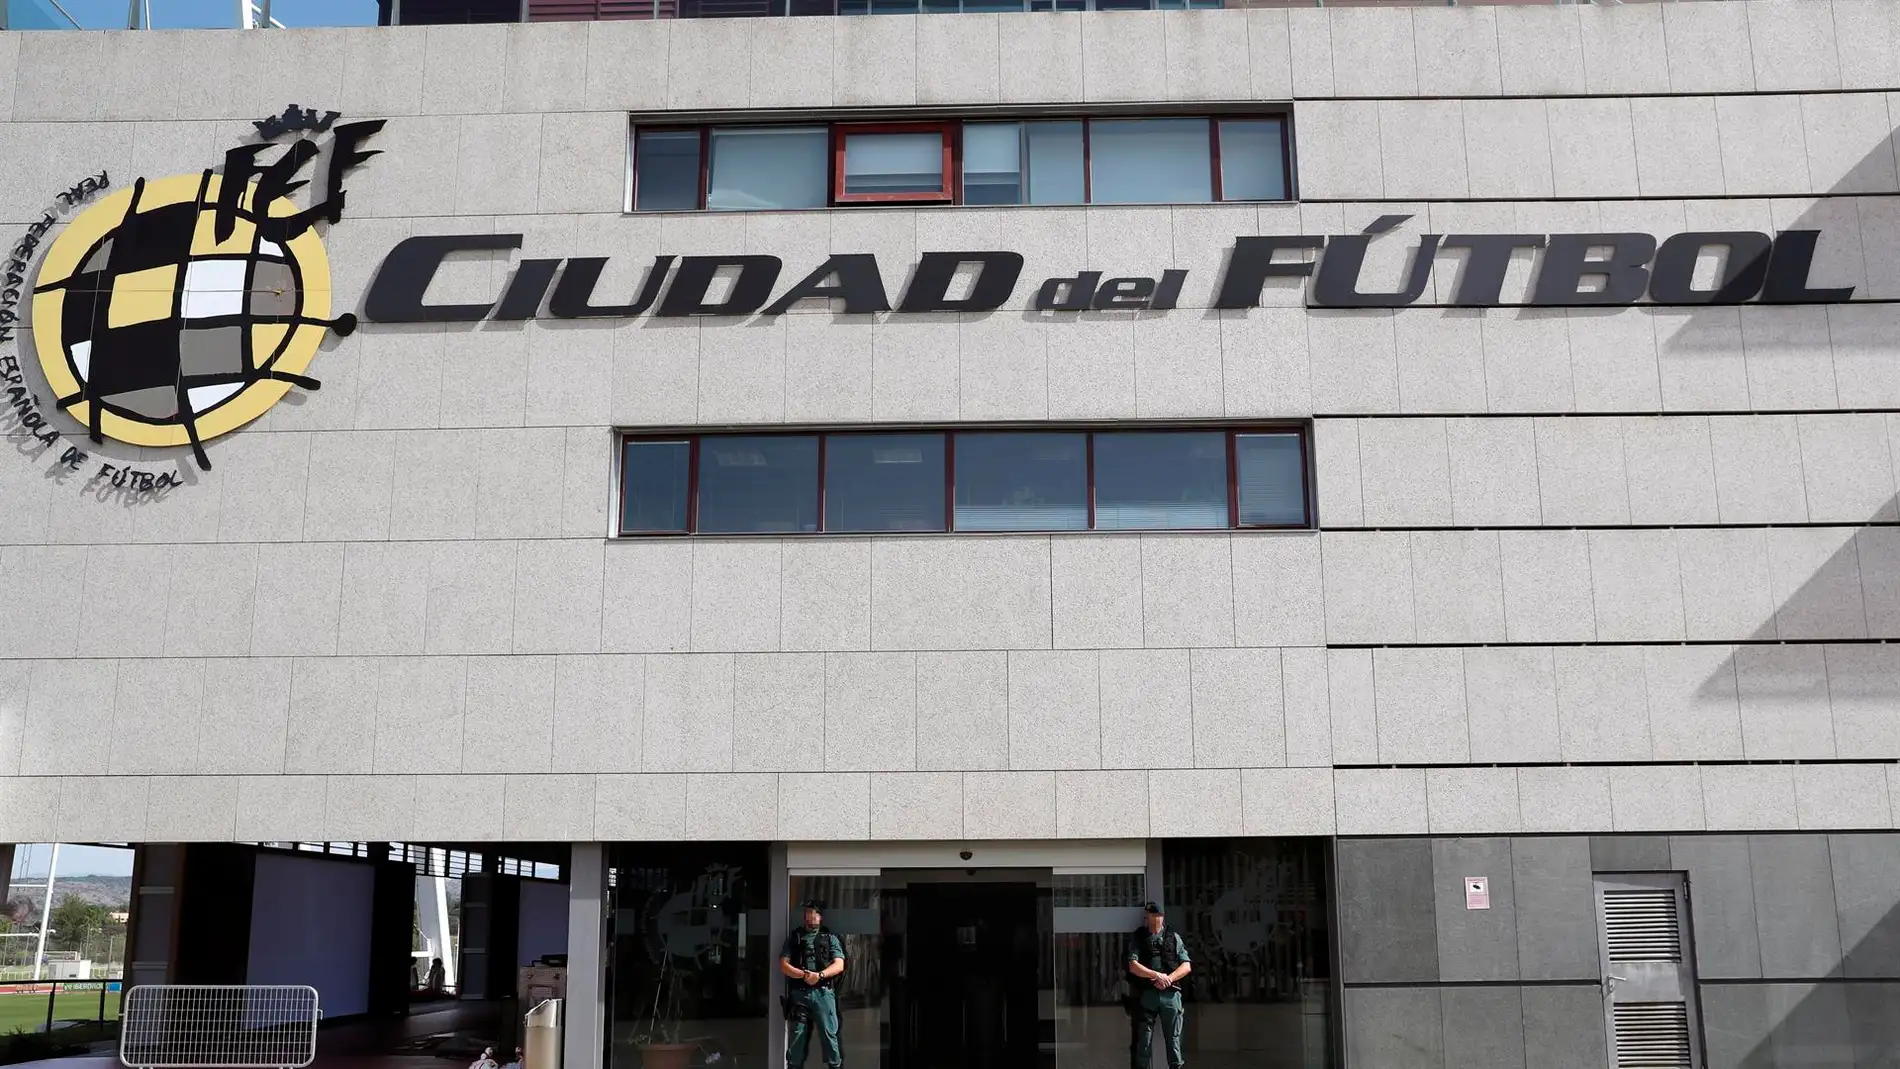 Sede de la Federación Española de Fútbol, en la localidad madrileña de Las Rozas. / Efe